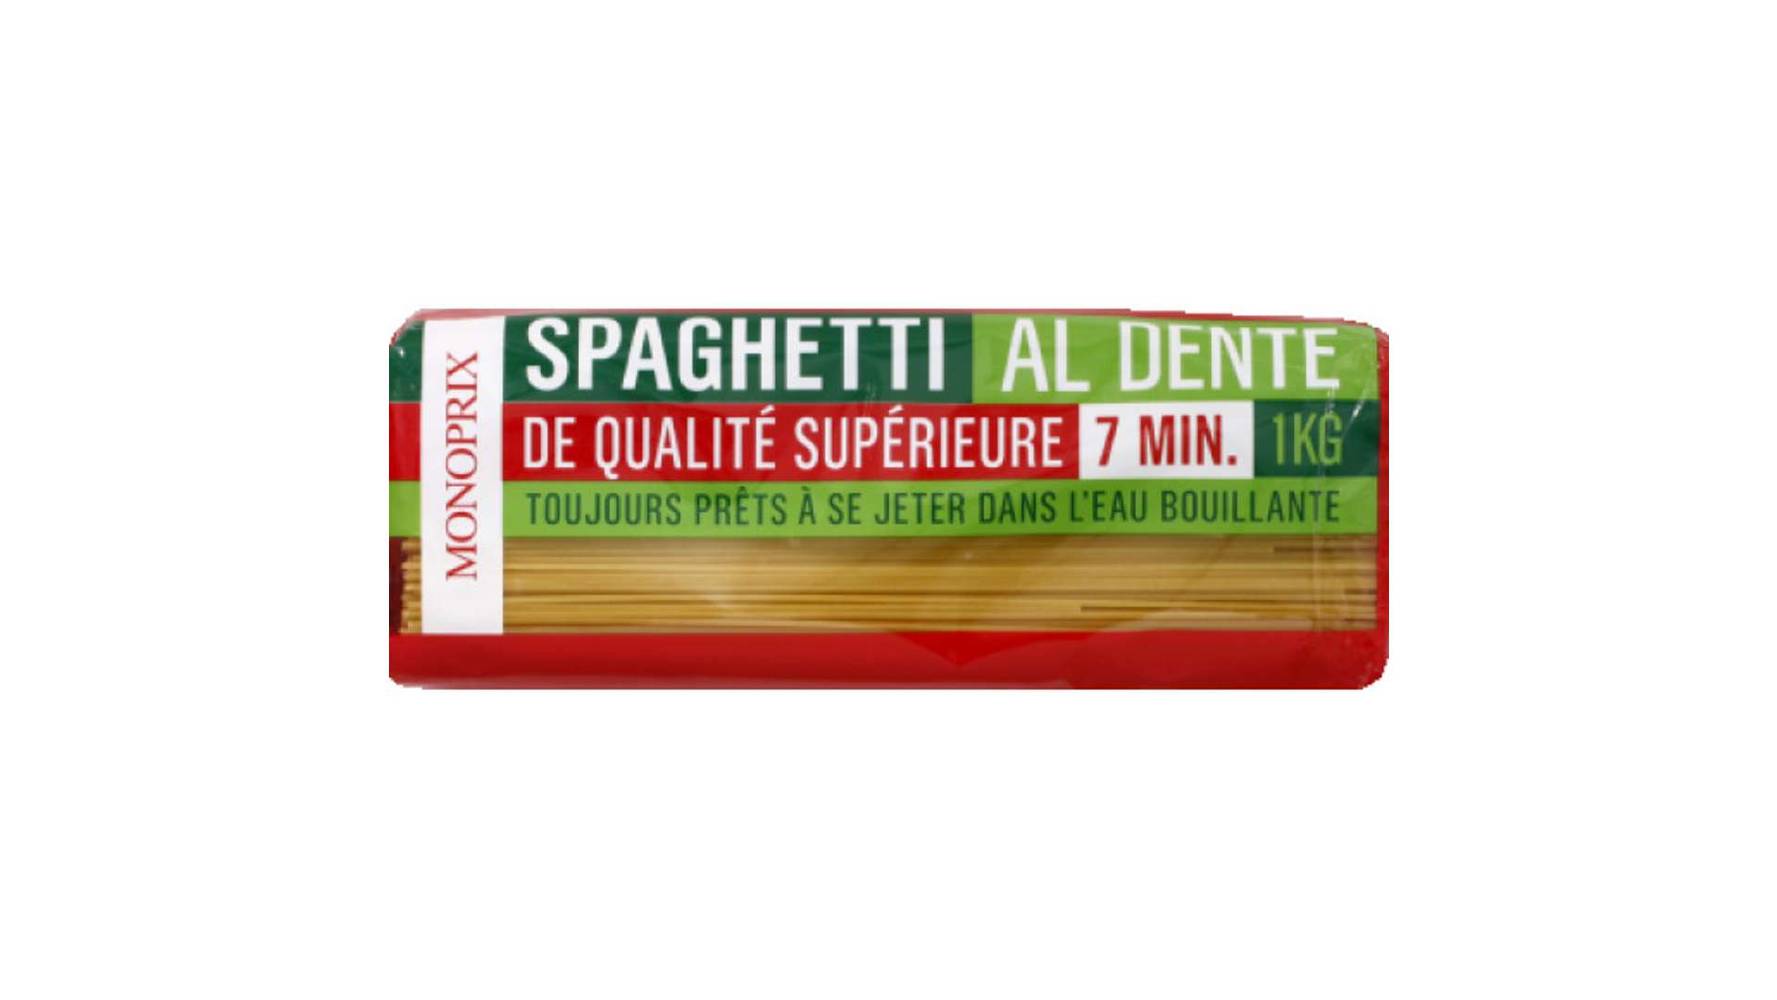 Monoprix Spaghetti, de qualité supérieure Le paquet de 1kg